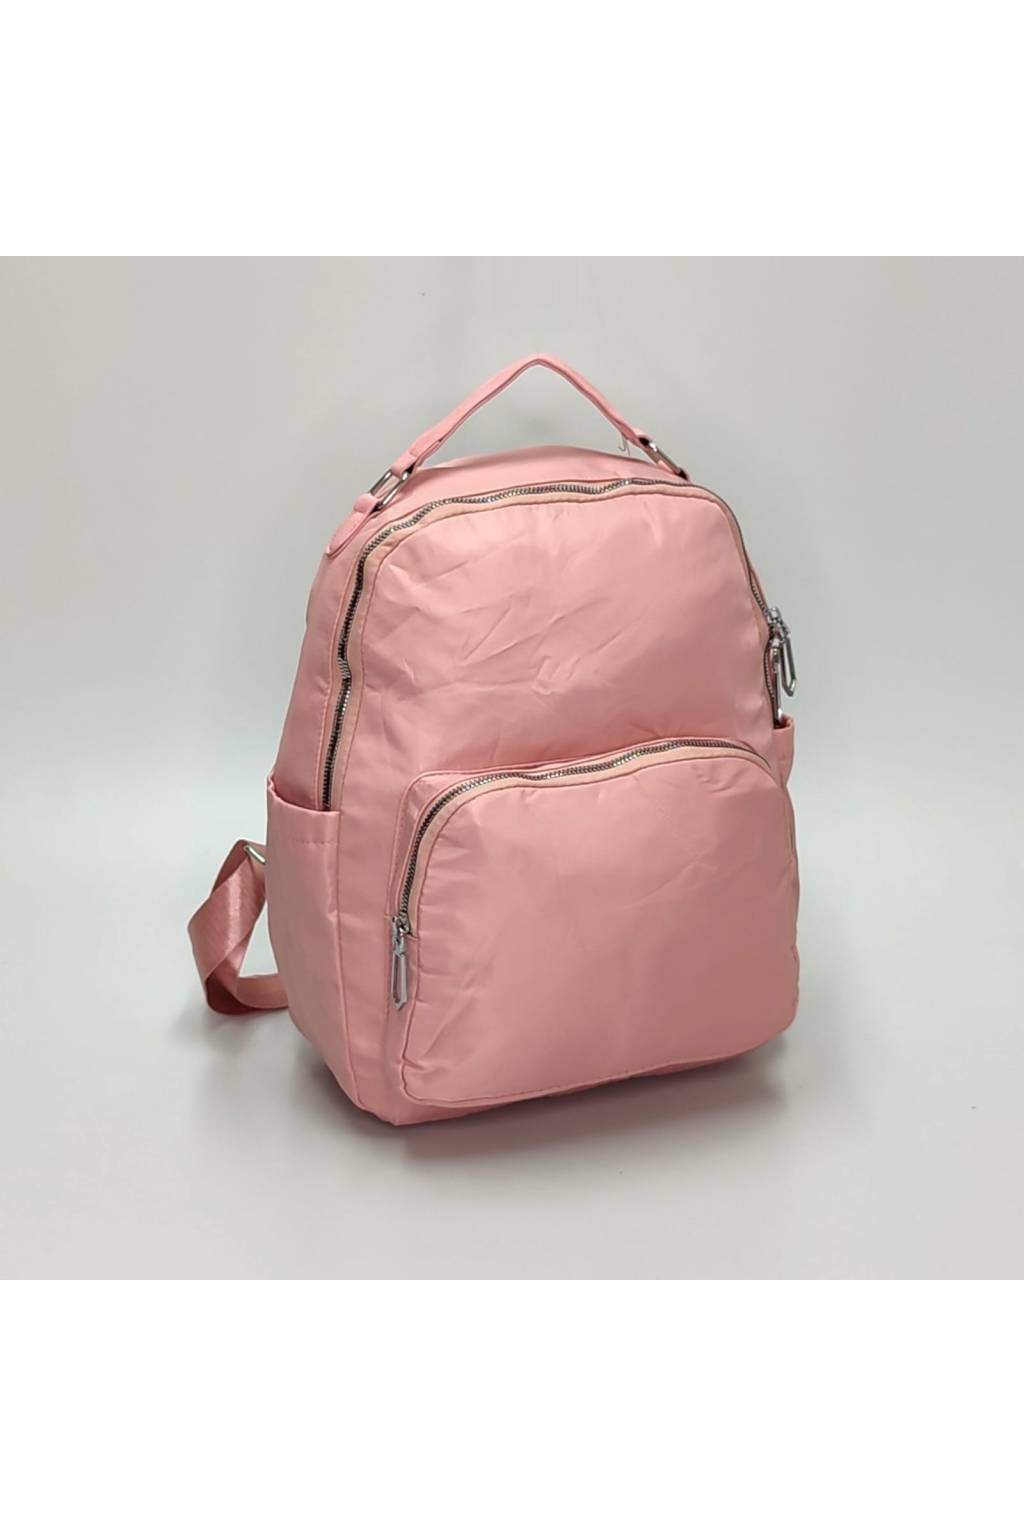 Dámsky ruksak B7235 svetloružová www.kabelky vypredaj (7)